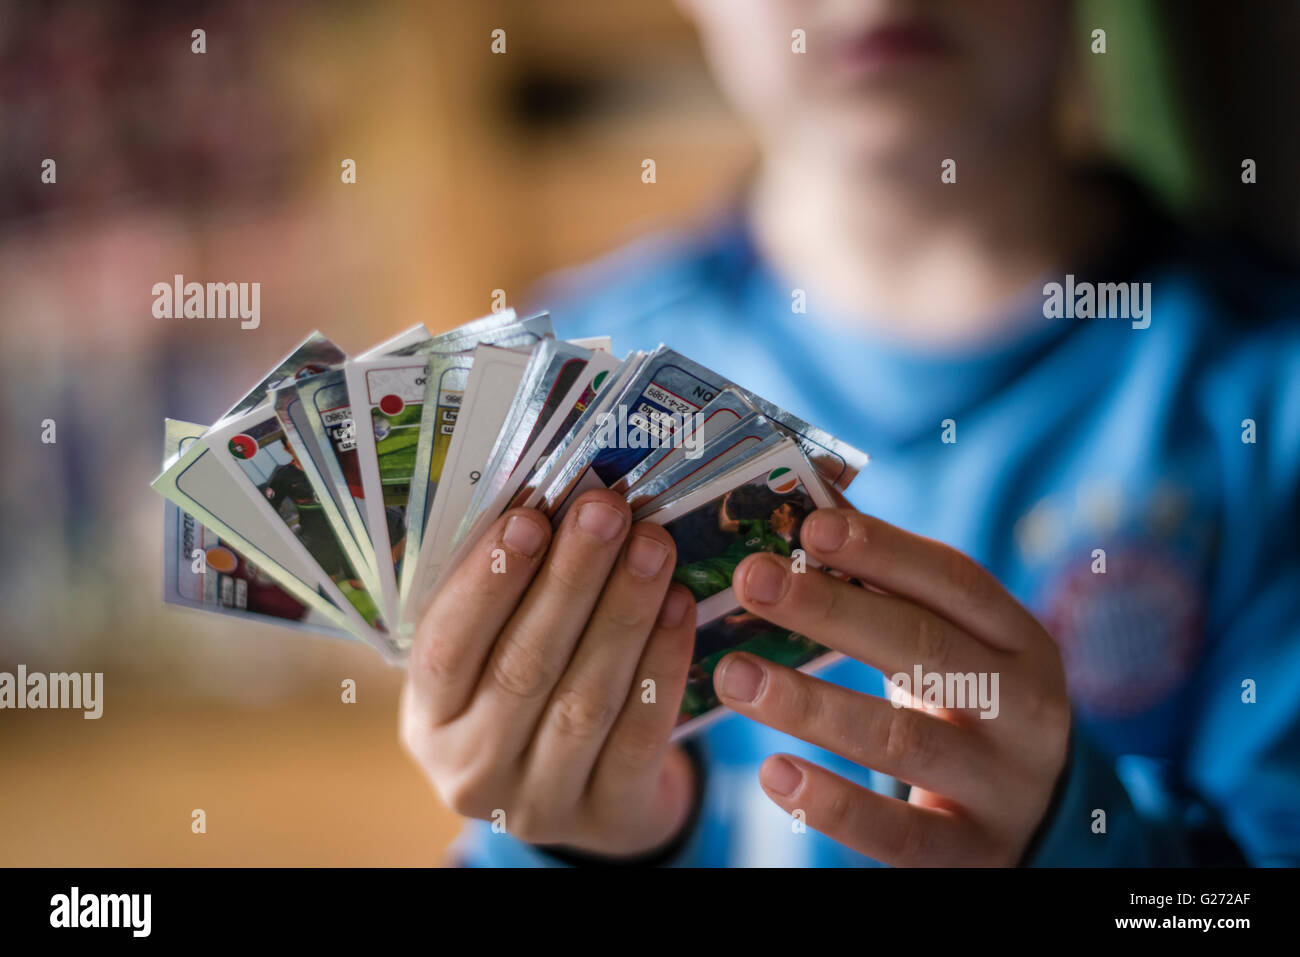 Un garçon de 8 ans est montrant son football Panini trading cards avant de le coller dans son album collection autocollant. Banque D'Images